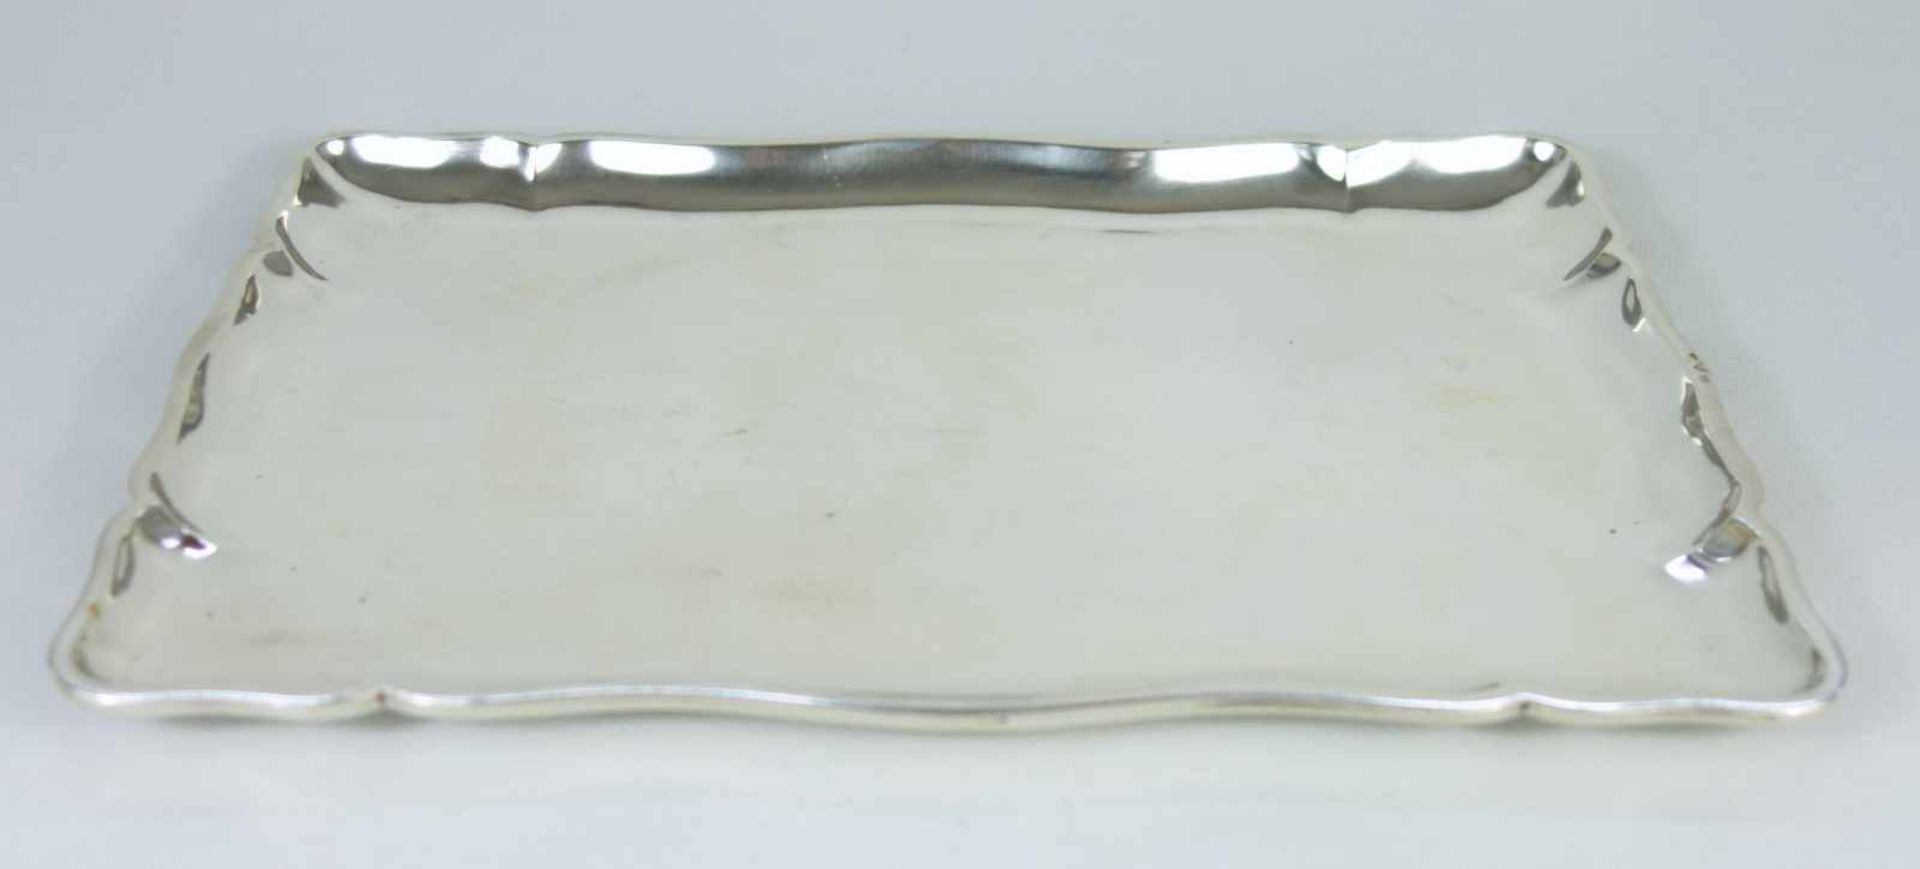 Tablett, Tschechoslowakei, zwischen 1929-1942, 800er Silberrechteckig mit gewelltem Rand, leicht